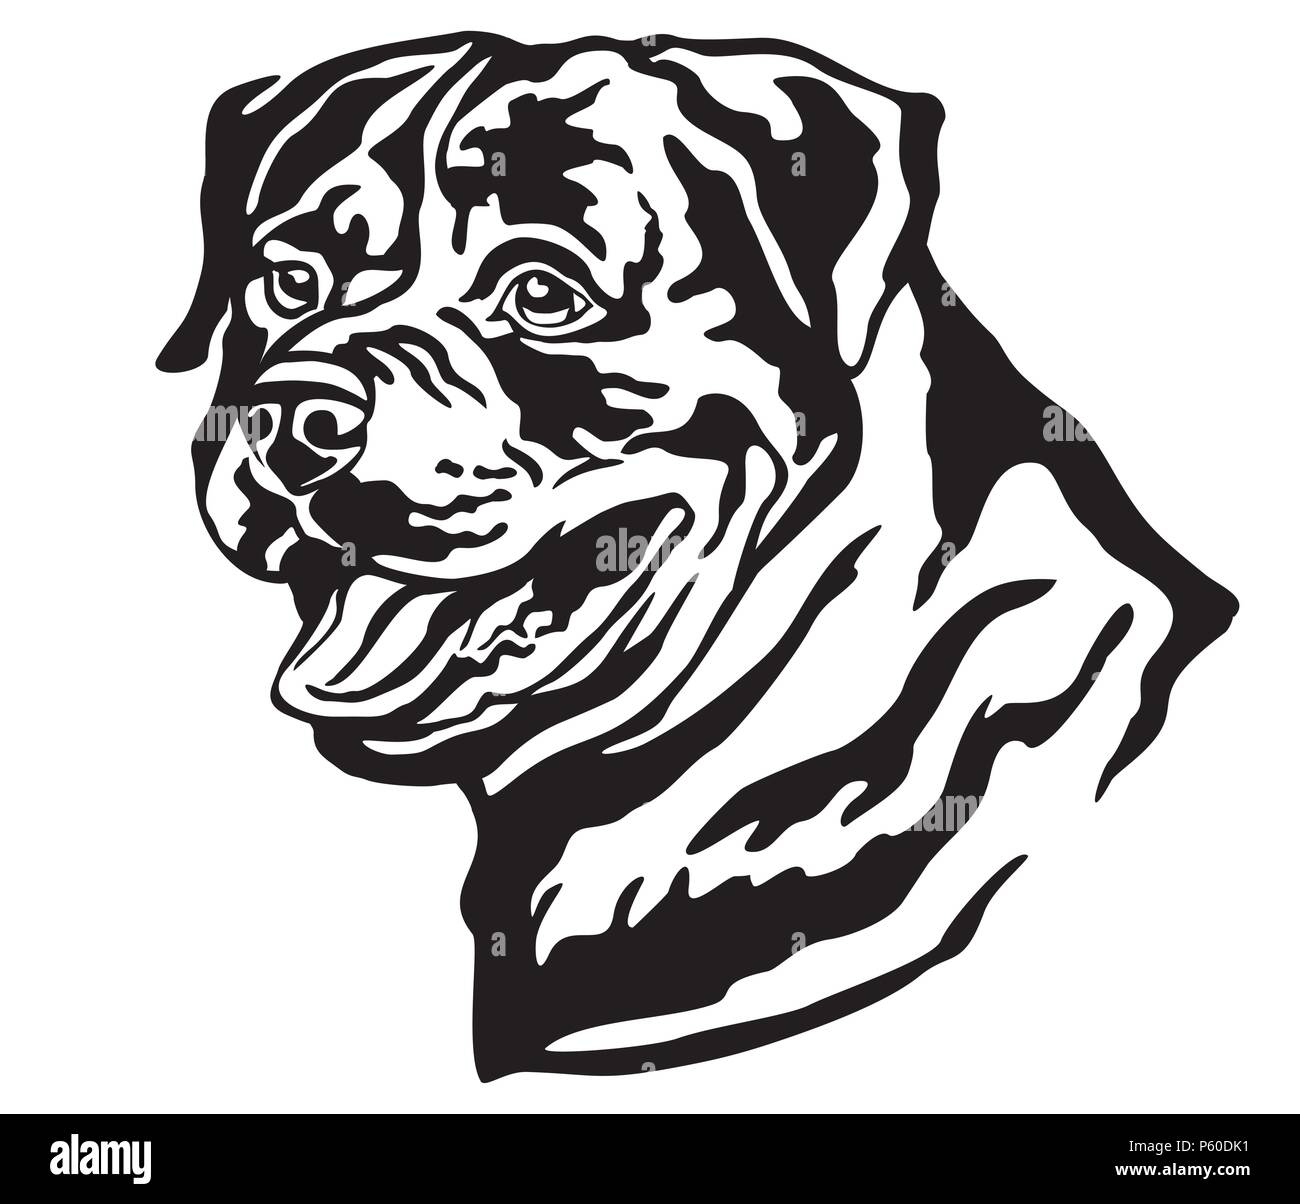 Ritratto decorativo di cane Rottweiler, vettore isolato illustrazione in colore nero su sfondo bianco. Immagine per design e tatuaggio. Illustrazione Vettoriale